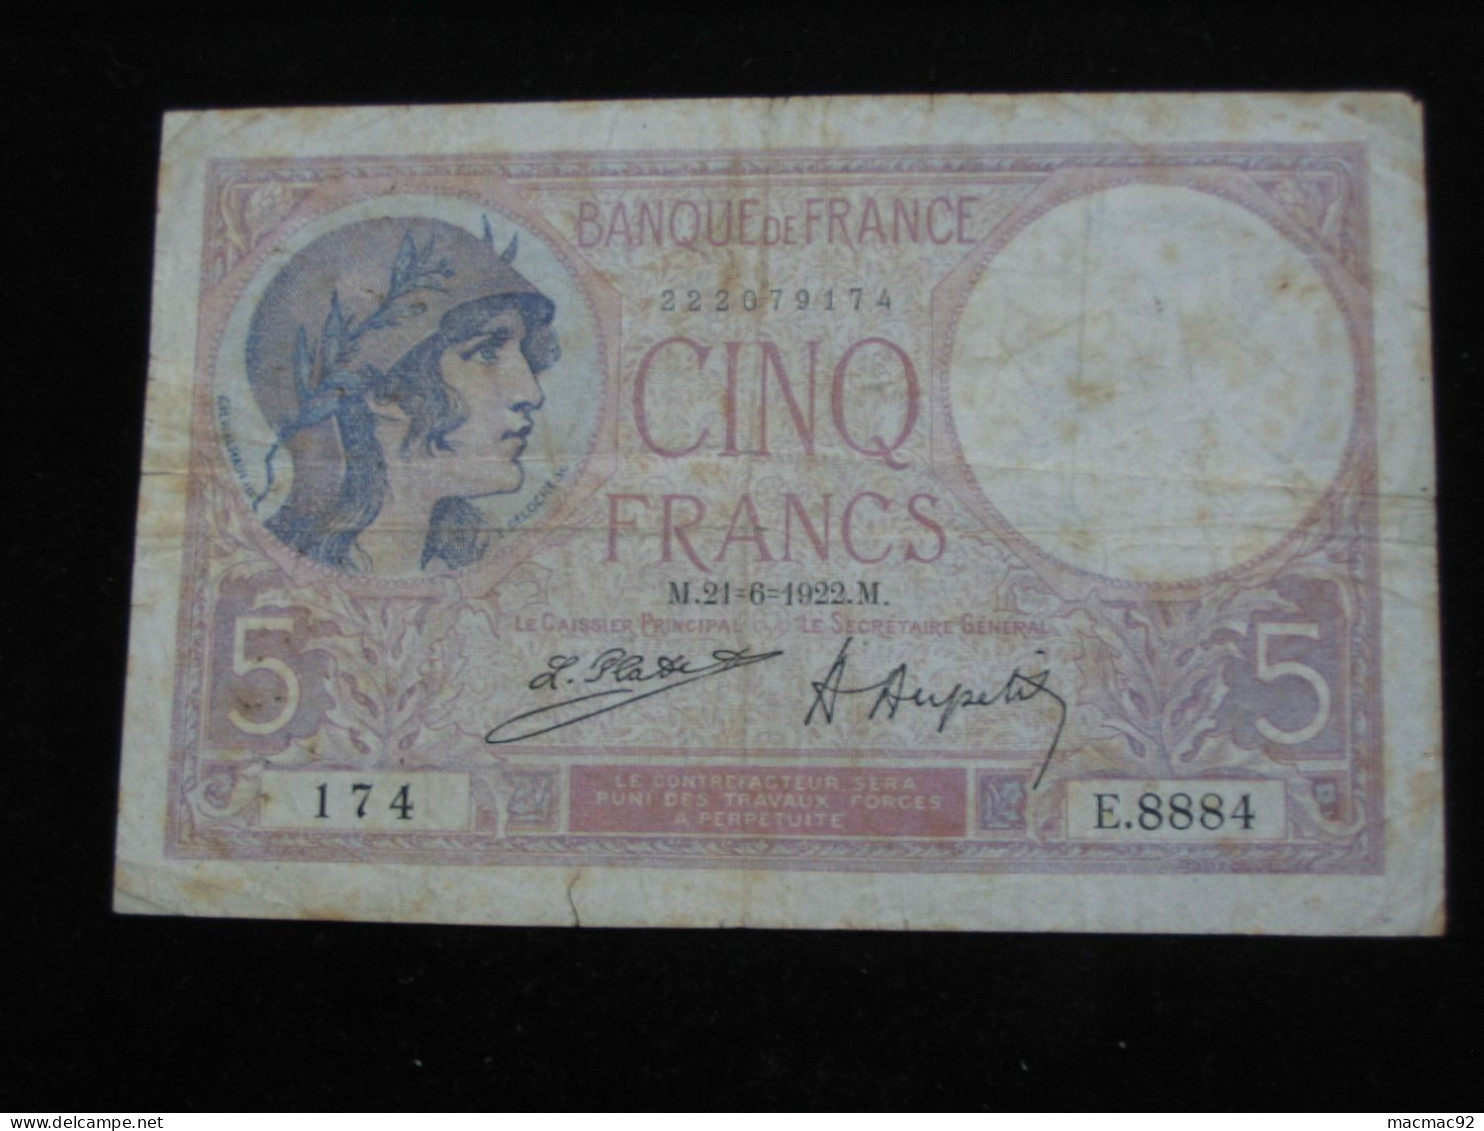 5 Francs - Cinq Francs Violet  21-6-1922   **** EN ACHAT IMMEDIAT **** - 5 F 1917-1940 ''Violet''